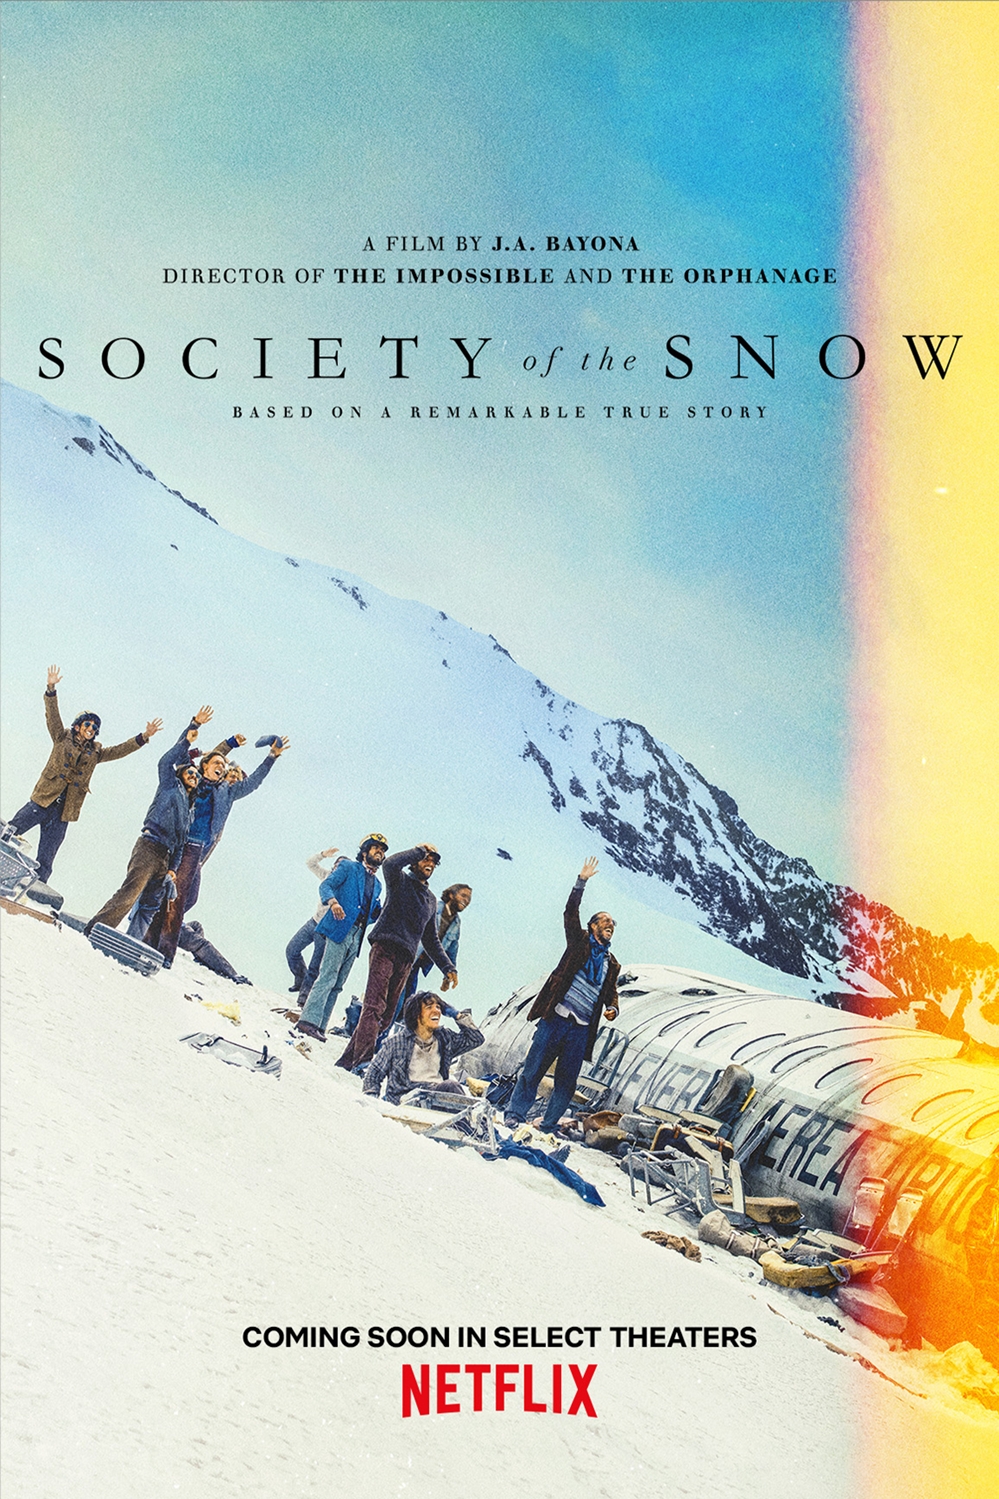 ดูหนังฟรีออนไลน์ หิมะโหด คนทรหด (Society of the Snow) | Netflix